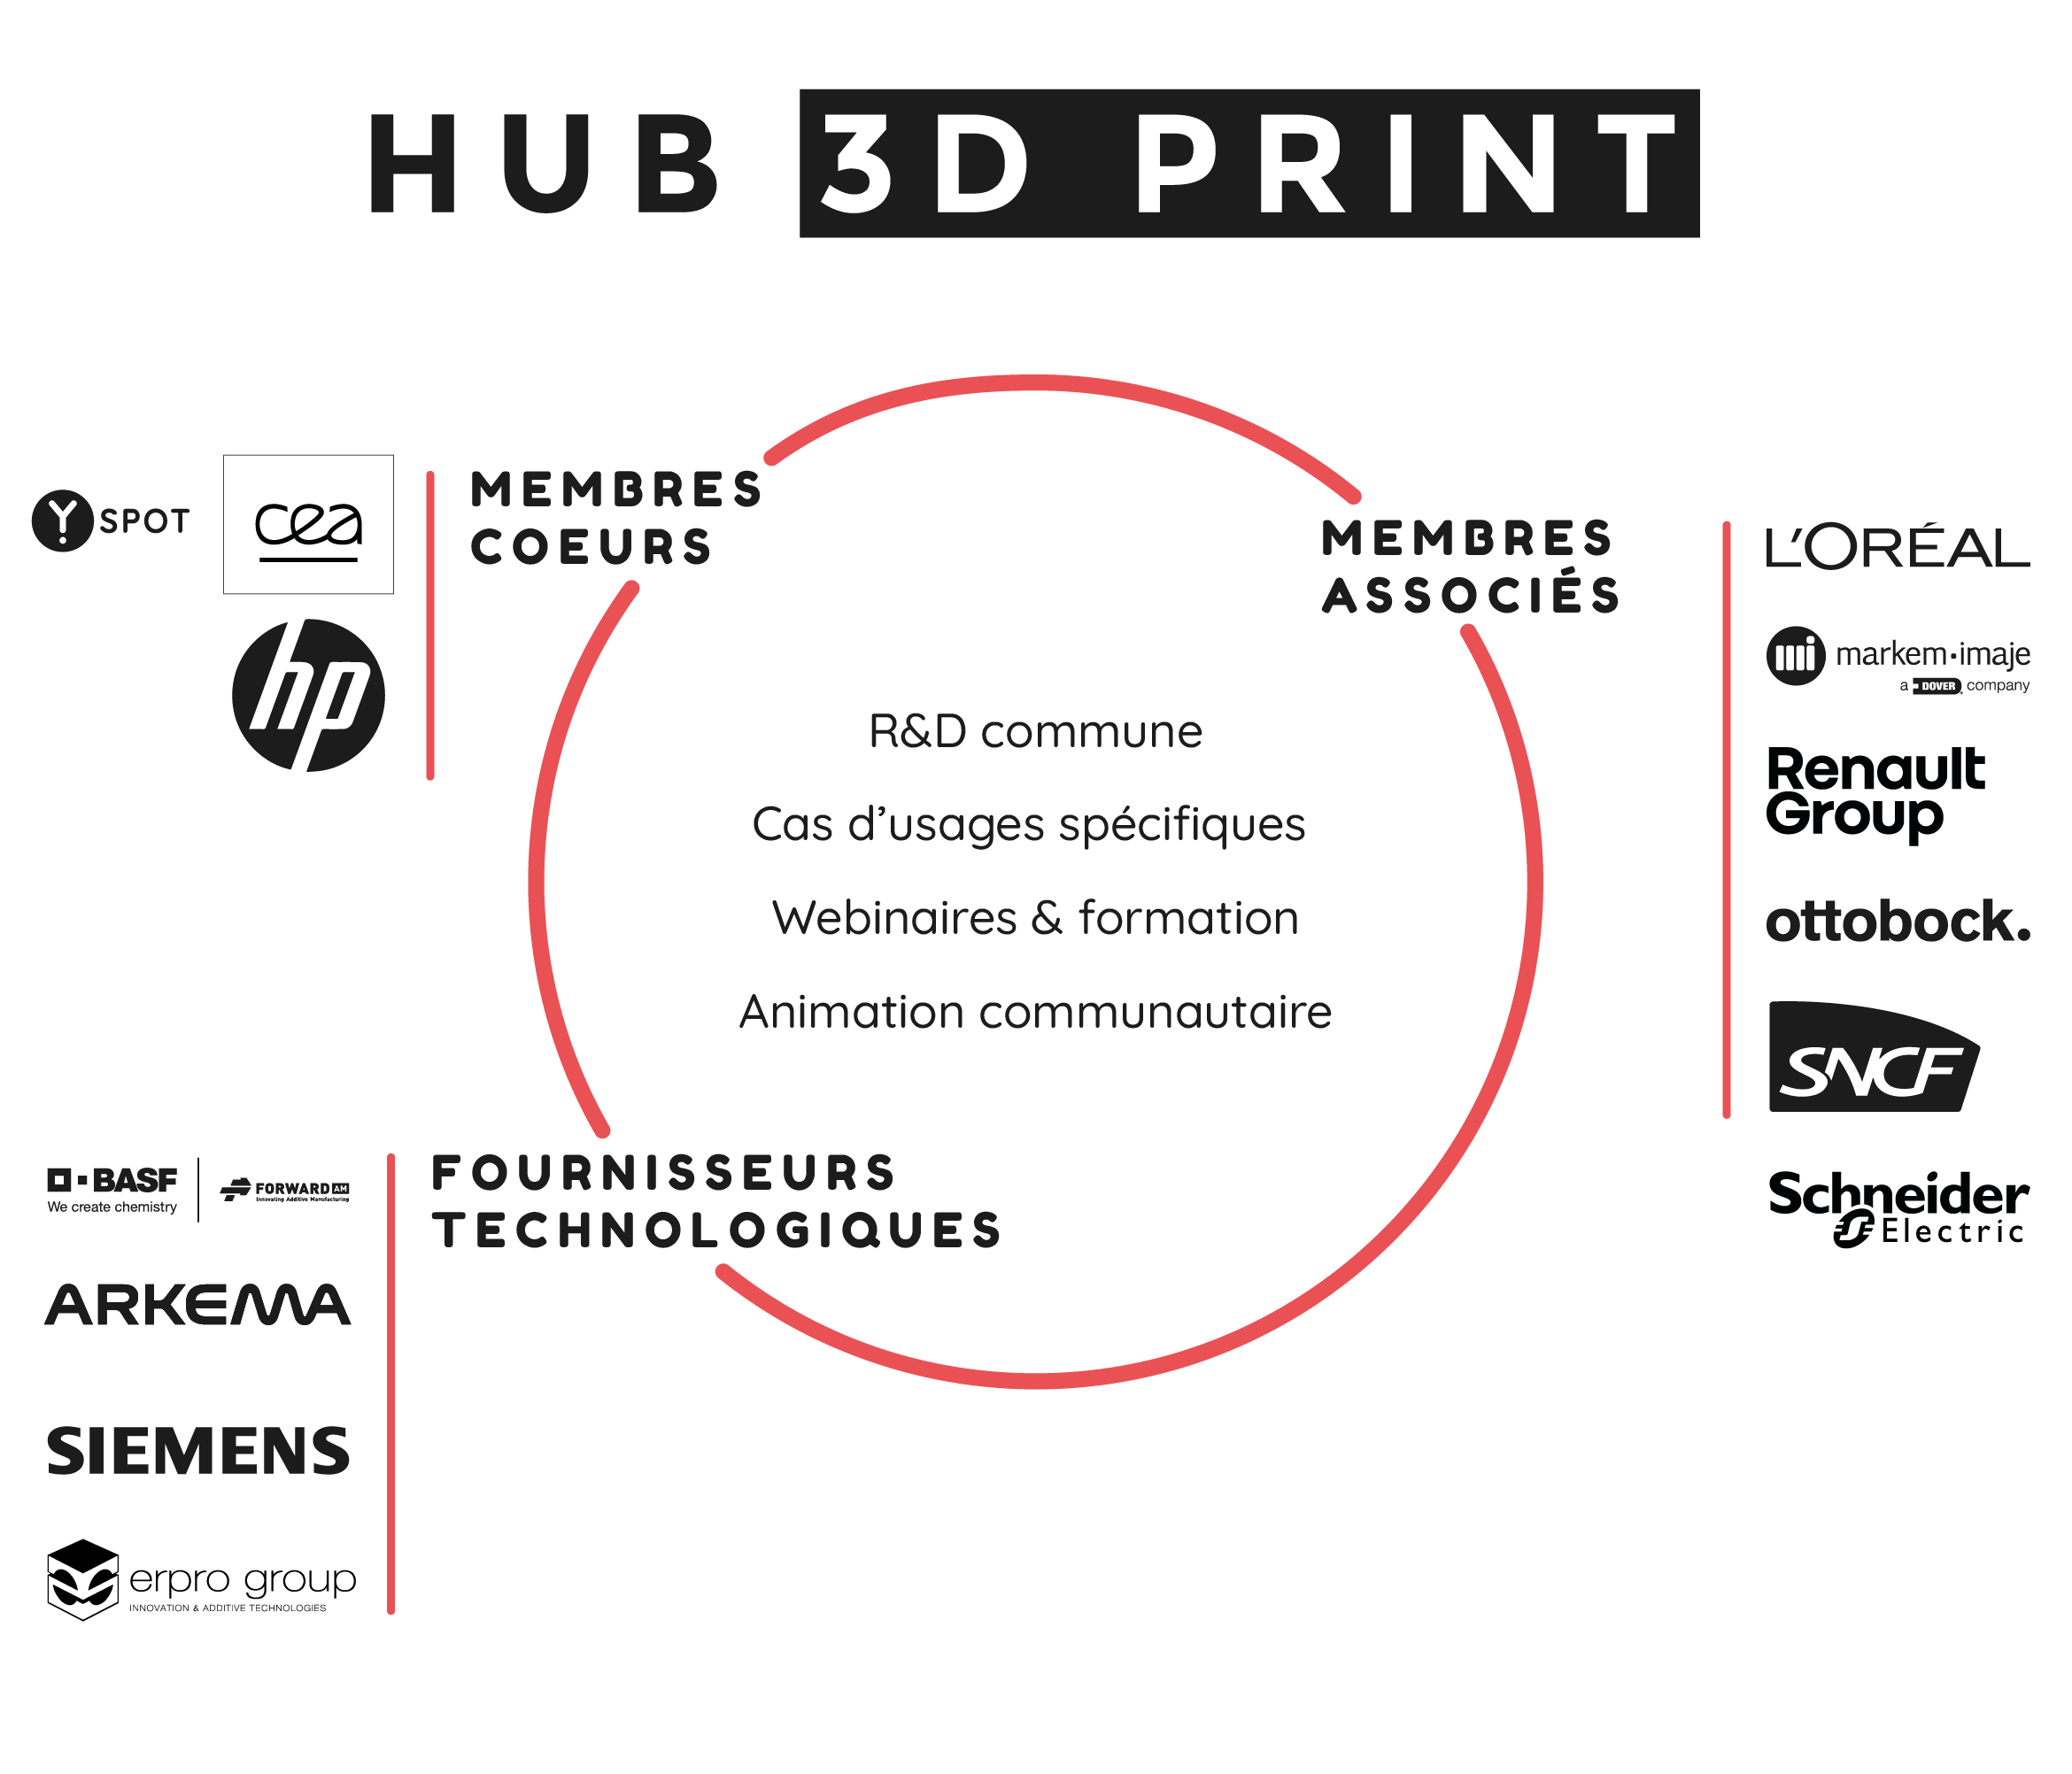 Le 3D Print Hub comprend des membres principaux (CEA Y. SPOT et HP Inc.), des membres associés (L'Oréal, Markem-Imaj, Renault, Ottobock et SNCF) et des fournisseurs de technologie (BASF, ARKEMA et Siemens). Tous ces acteurs sont regroupés autour d'une R&D commune, de cas d'usages spécifiques, de wébinaires, de formations et d'activités communautaires.